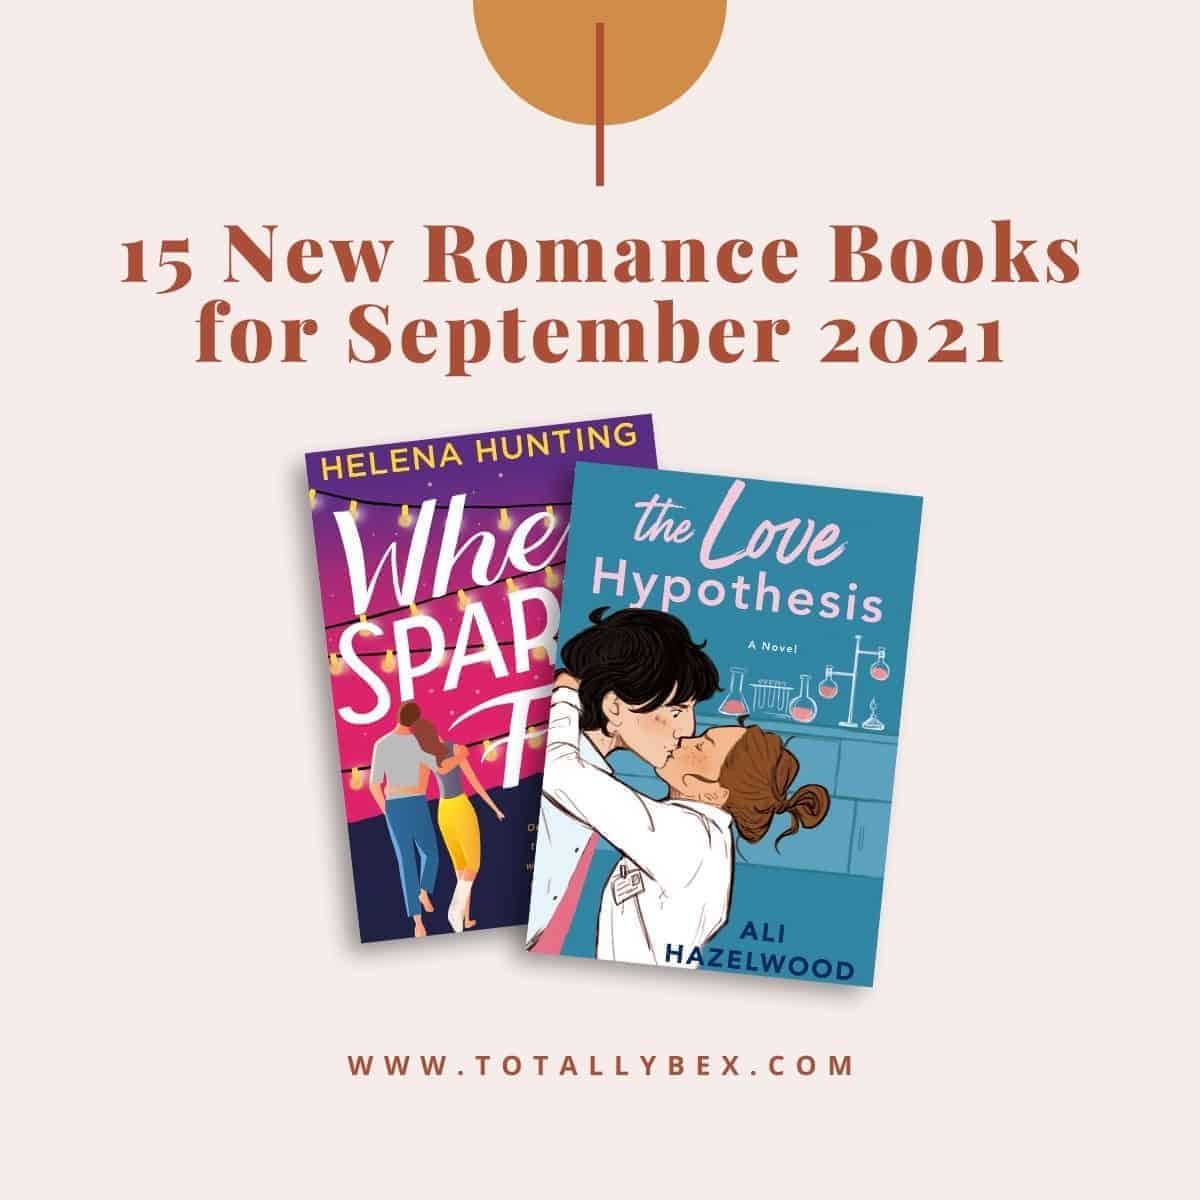 15 New Romance Books for September 2021